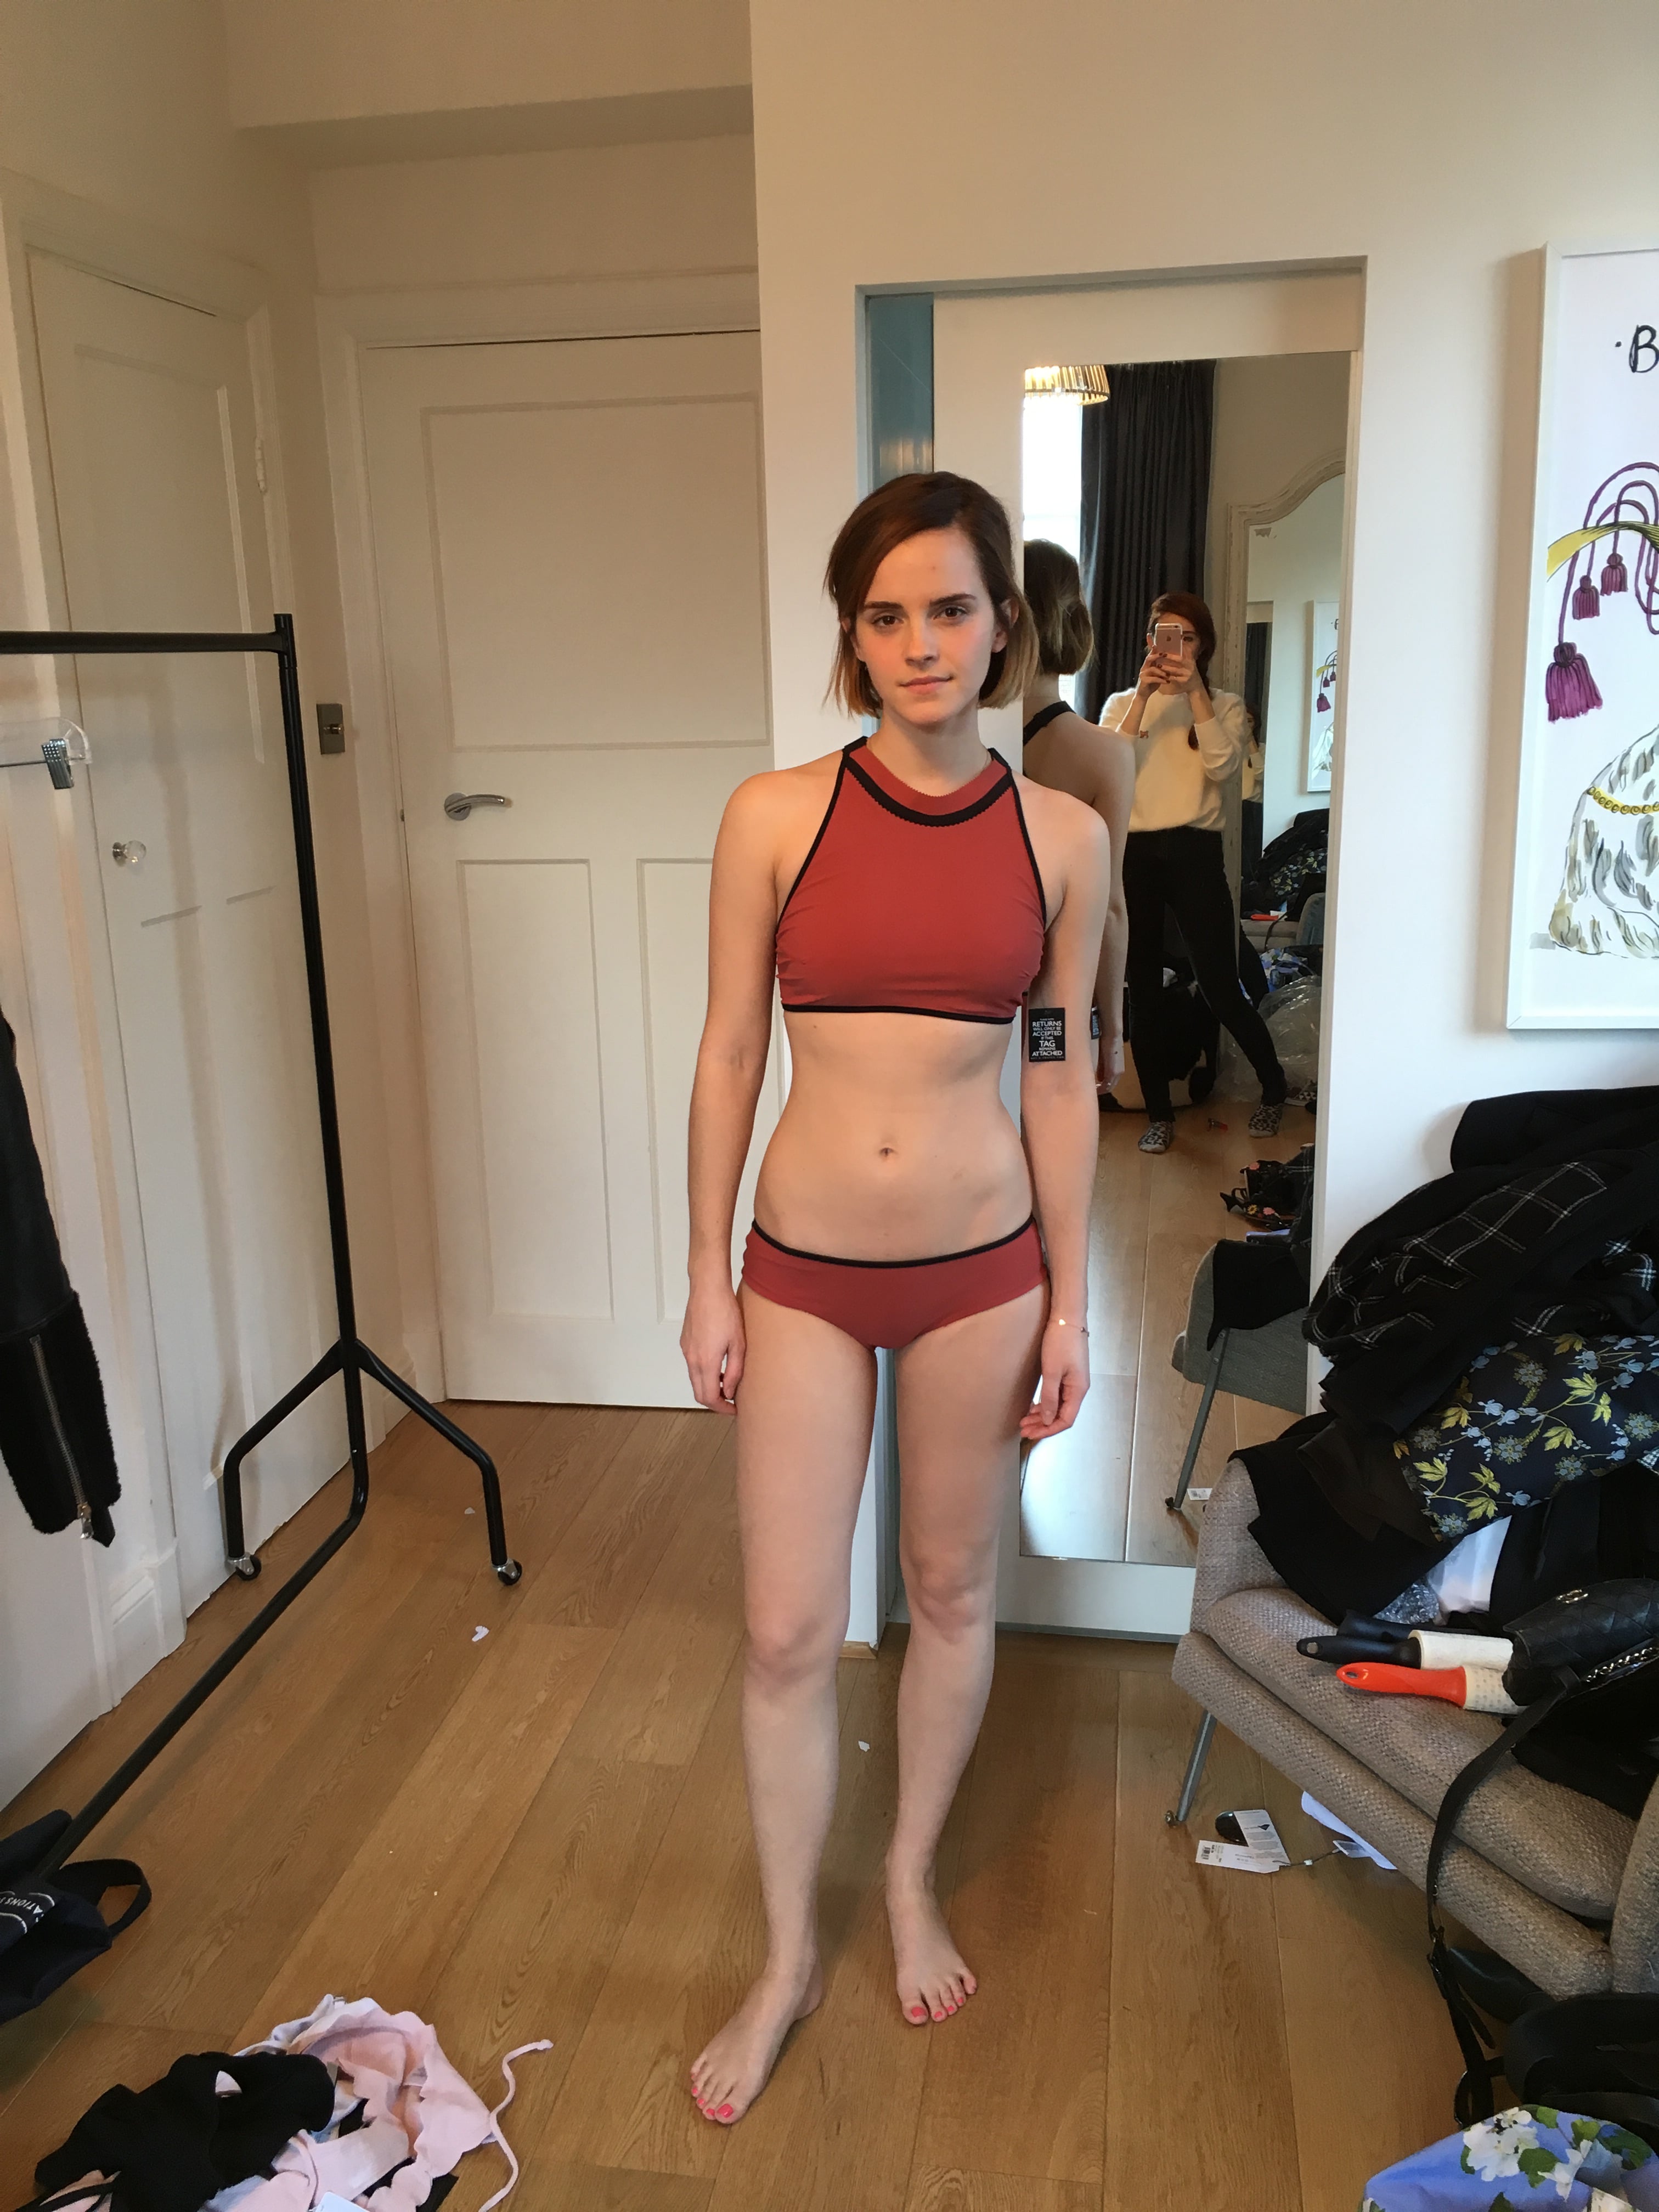 Emma Watson hot boobs